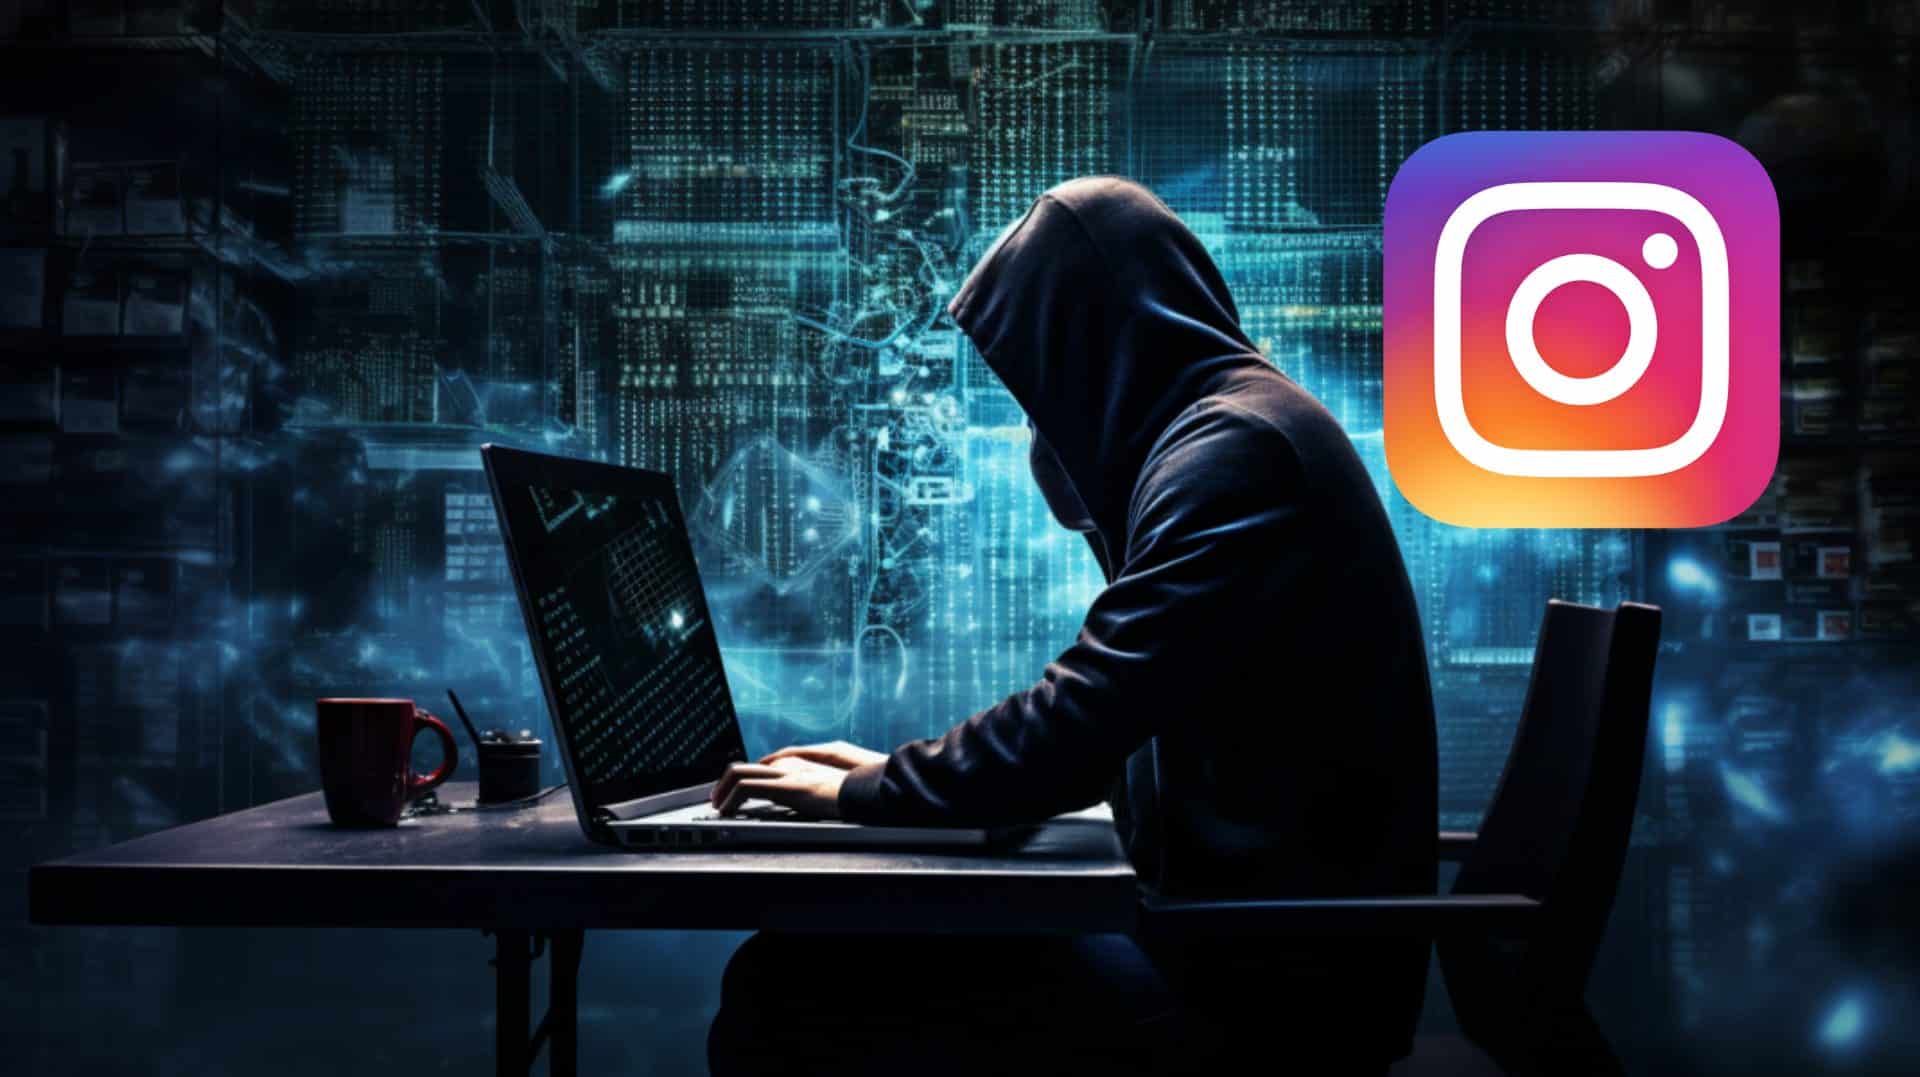 hacker encapuchado hackea el instagram de otra persona desde un ordenador